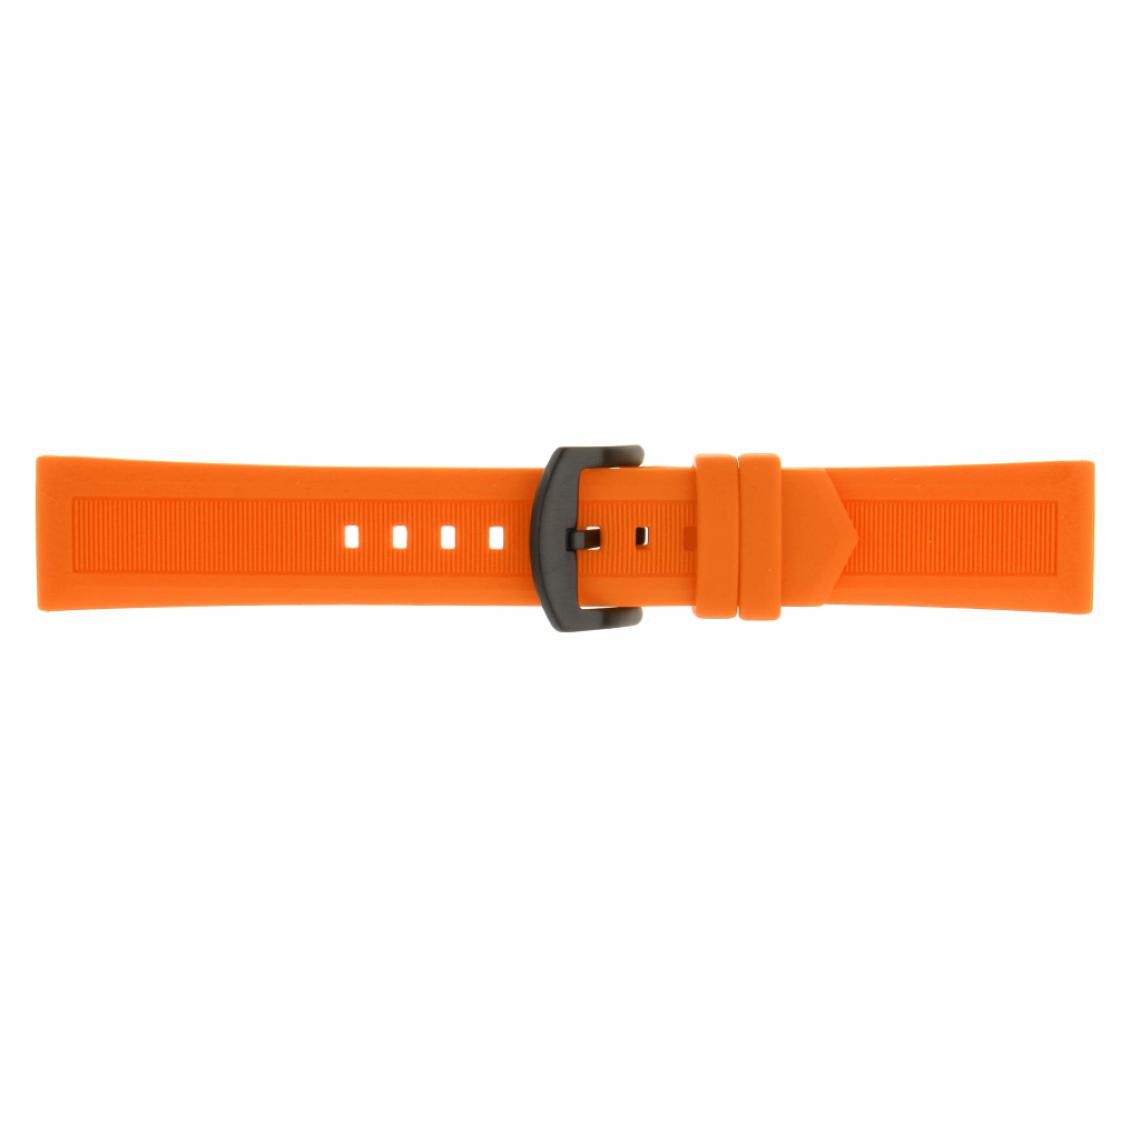 marque generique - Sport de qualité supérieure en caoutchouc de silicone orange pour remplacer la bande de montre - Accessoires montres connectées